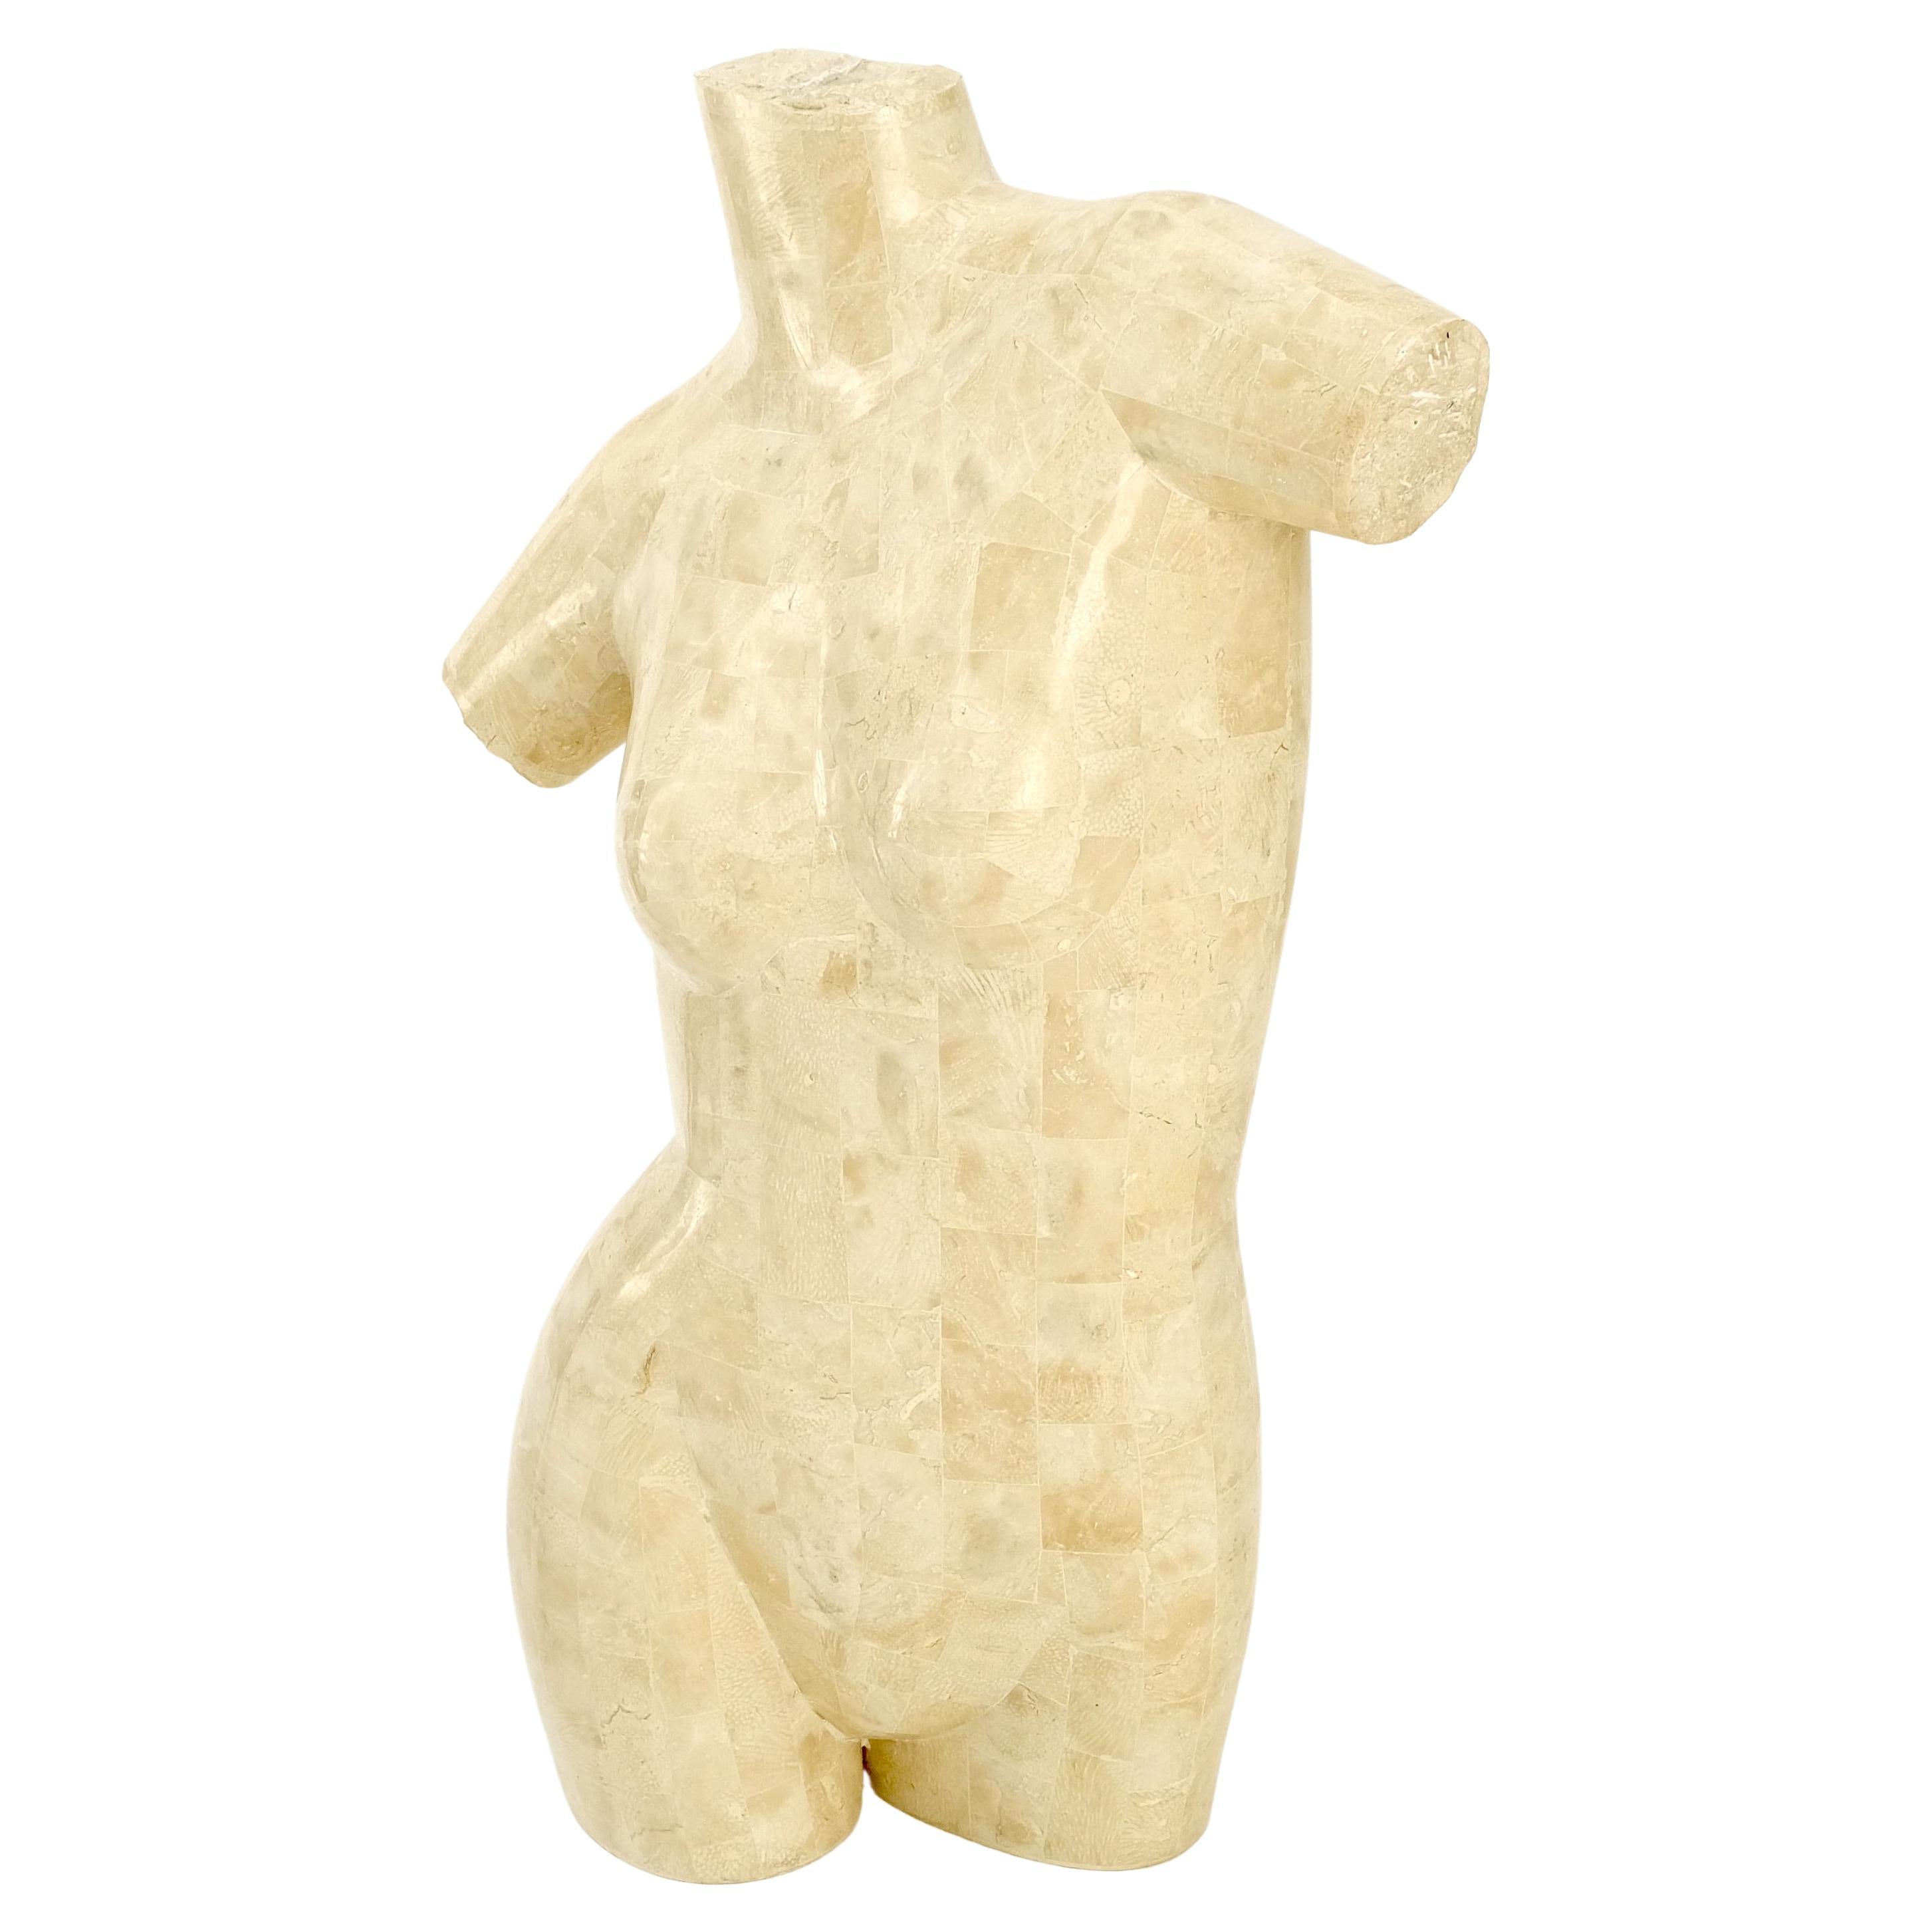 Sculpture en marbre et travertin tessellé d'un torse de femme nue menthe !